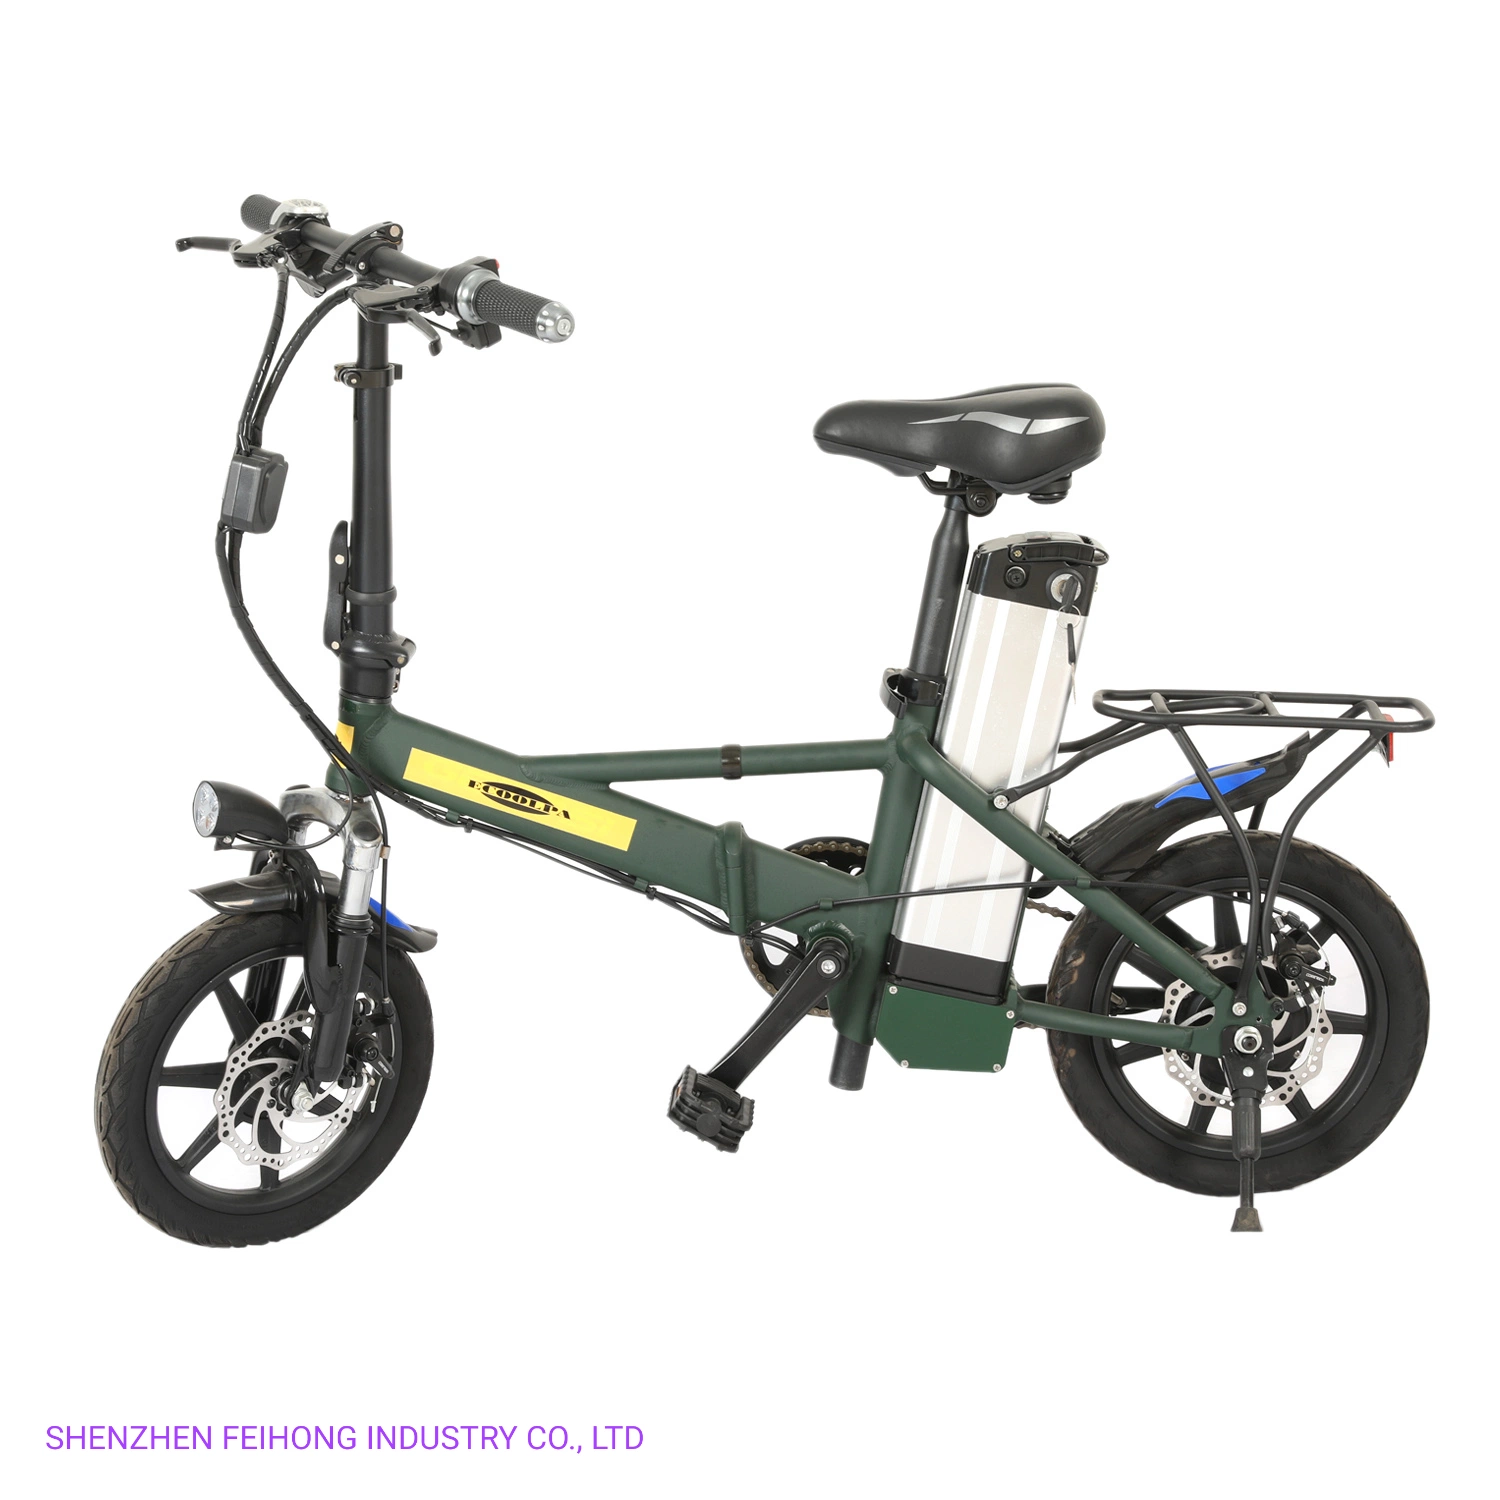 فامال موتوسيكل دراجة كهربائية سكوتر دراجة كهربائية دراجة بخارية بطارية دراجة بخارية ذات مغرفة محرك بقوة 48 فولت وبقوة 500 واط مع بطارية كهربائية بمحرك بقدرة 12 أمبير سكوتر